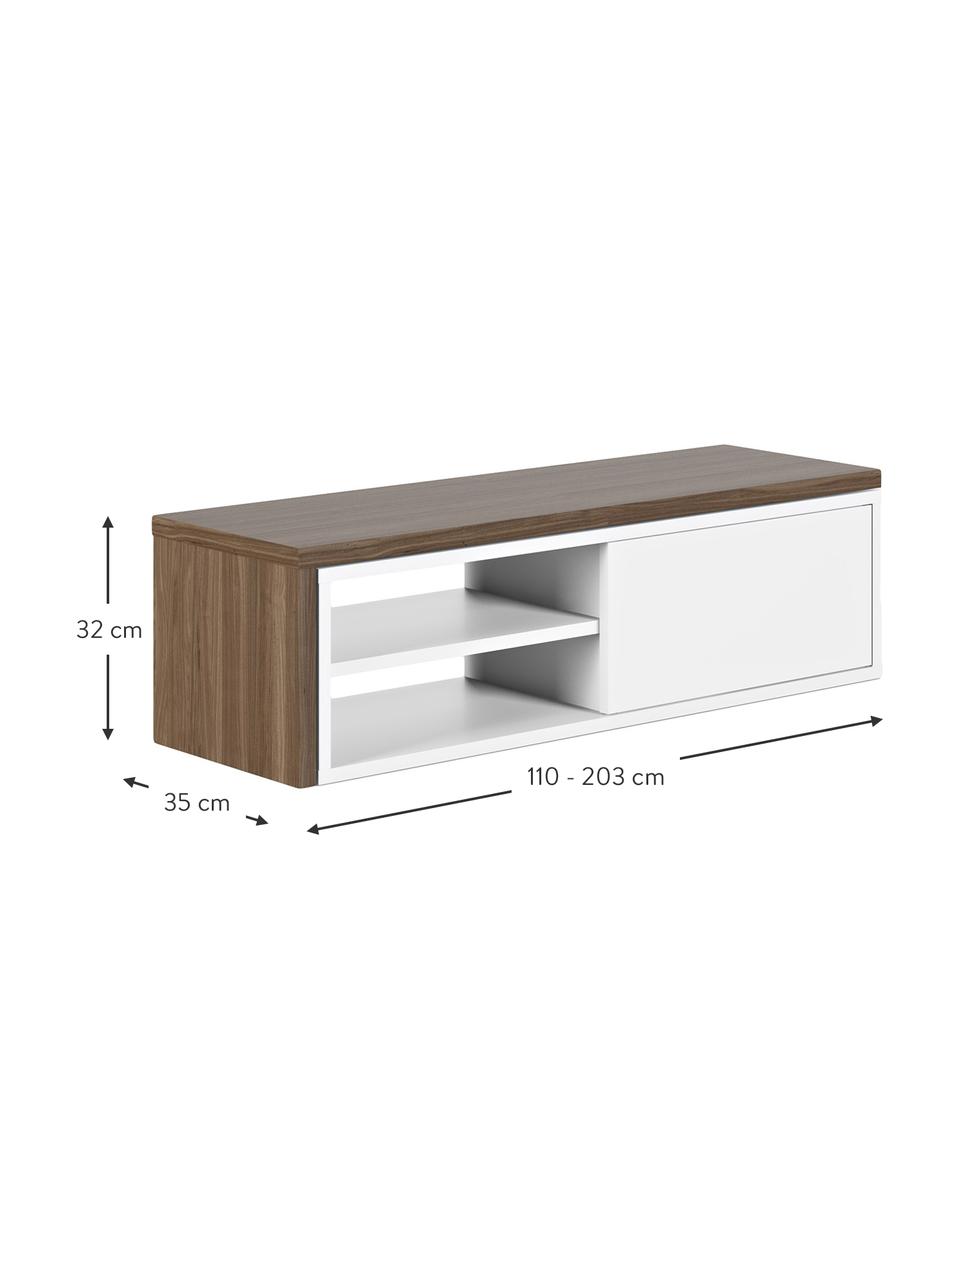 TV stolek s posuvnými dvířky Lieke, Ořechové dřevo, bílá, Š 110 až 203 cm, V 32 cm